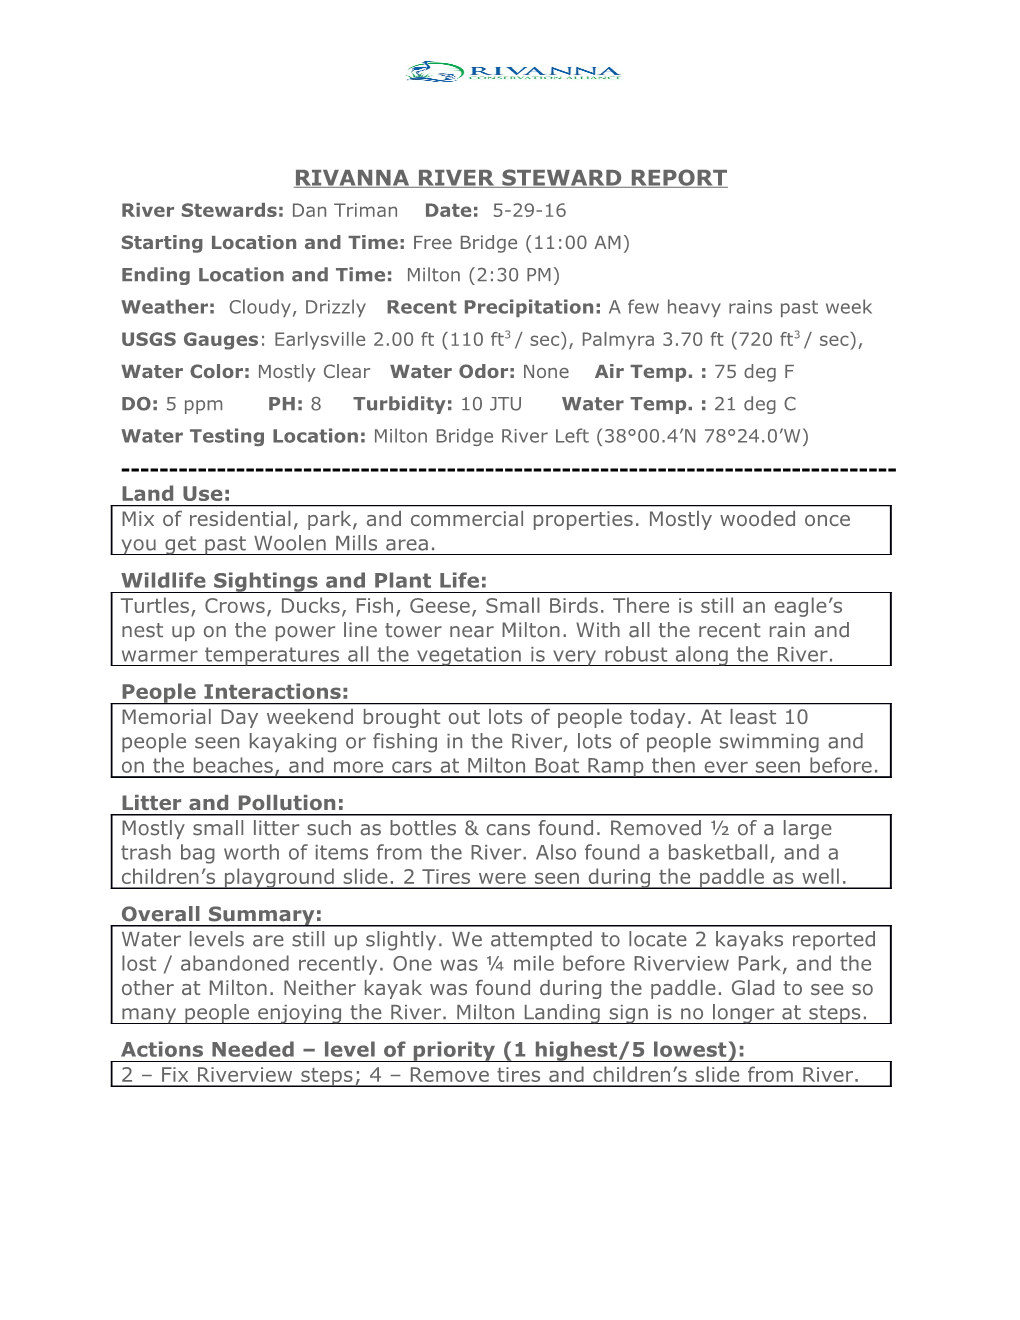 Rivanna River Steward Report s2